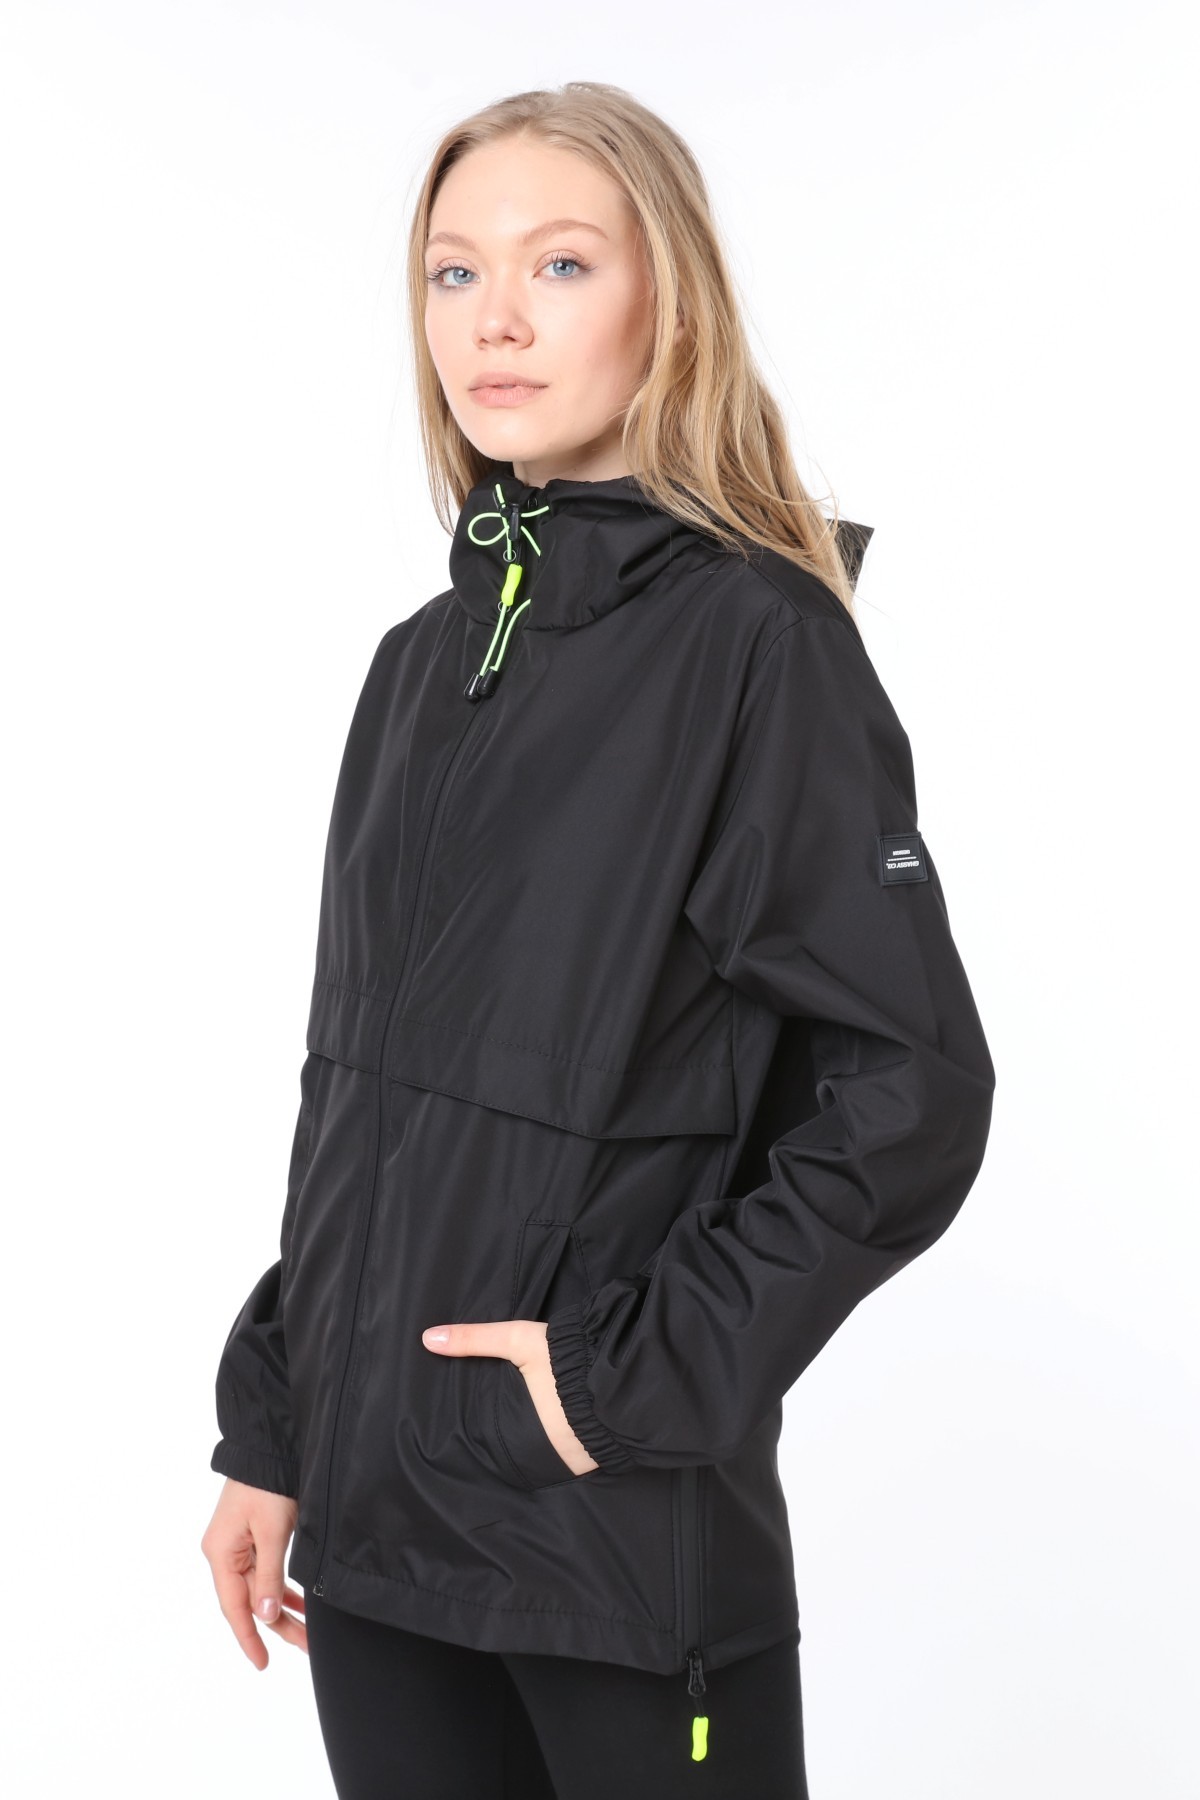 Ghassy Co.Kadın  Rüzgarlık/Yağmurluk Yırtmaç Detaylı Mevsimlik Siyah Spor Ceket